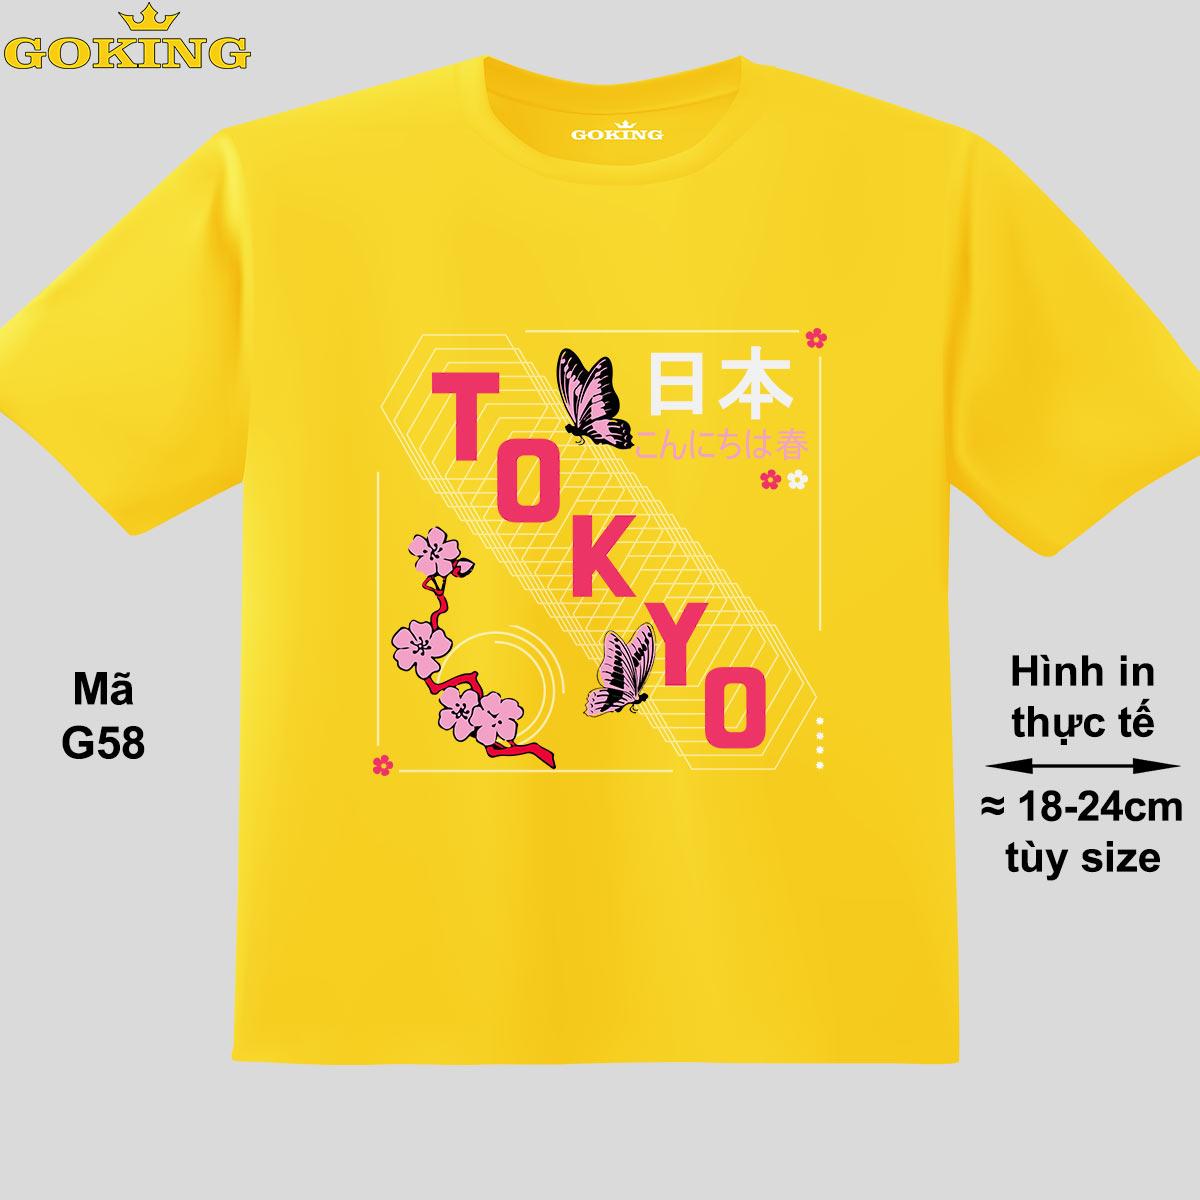 TOKYO, mã G58. Áo thun đẹp cho cả gia đình. Áo phông hàng hiệu Goking, công nghệ in Nhật Bản siêu nét. Form unisex cho nam nữ, trẻ em, bé trai gái